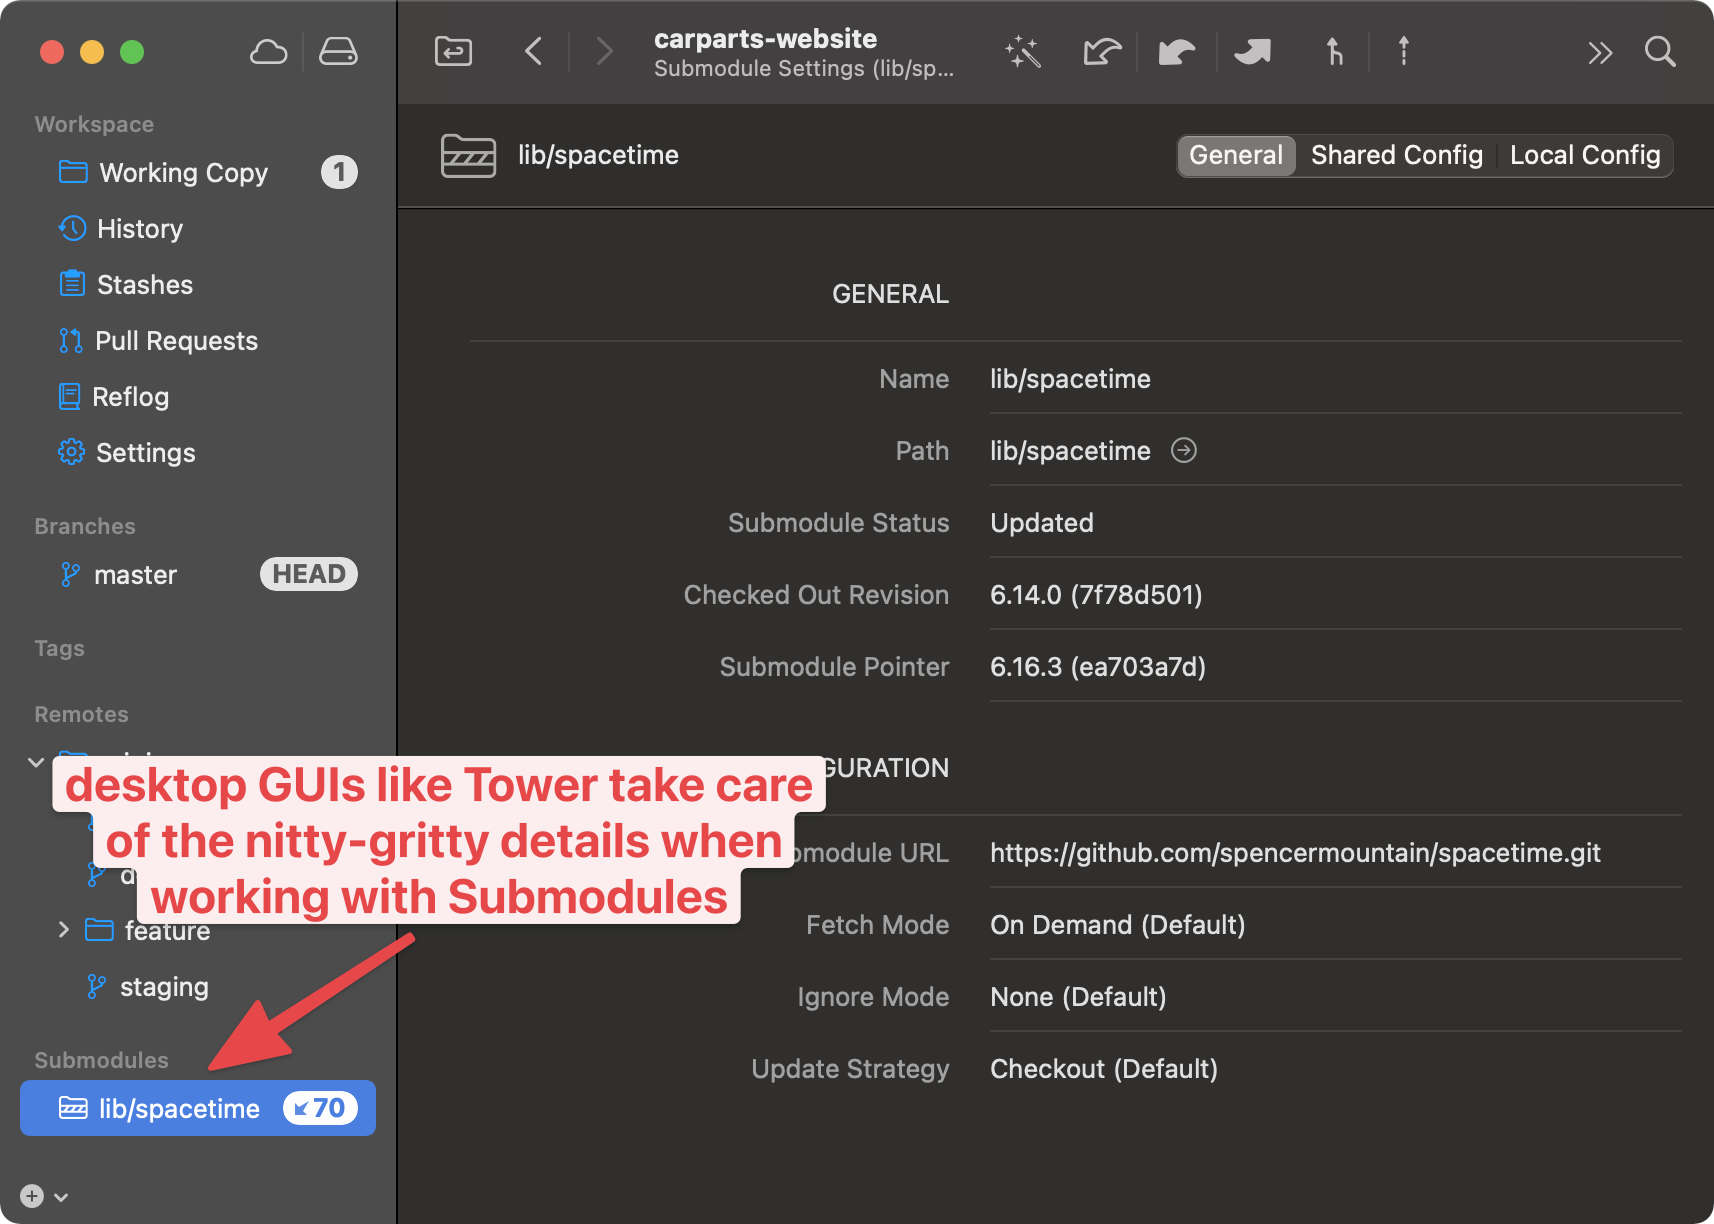 Git desktop GUIs like Tower make handling Git submodules easier